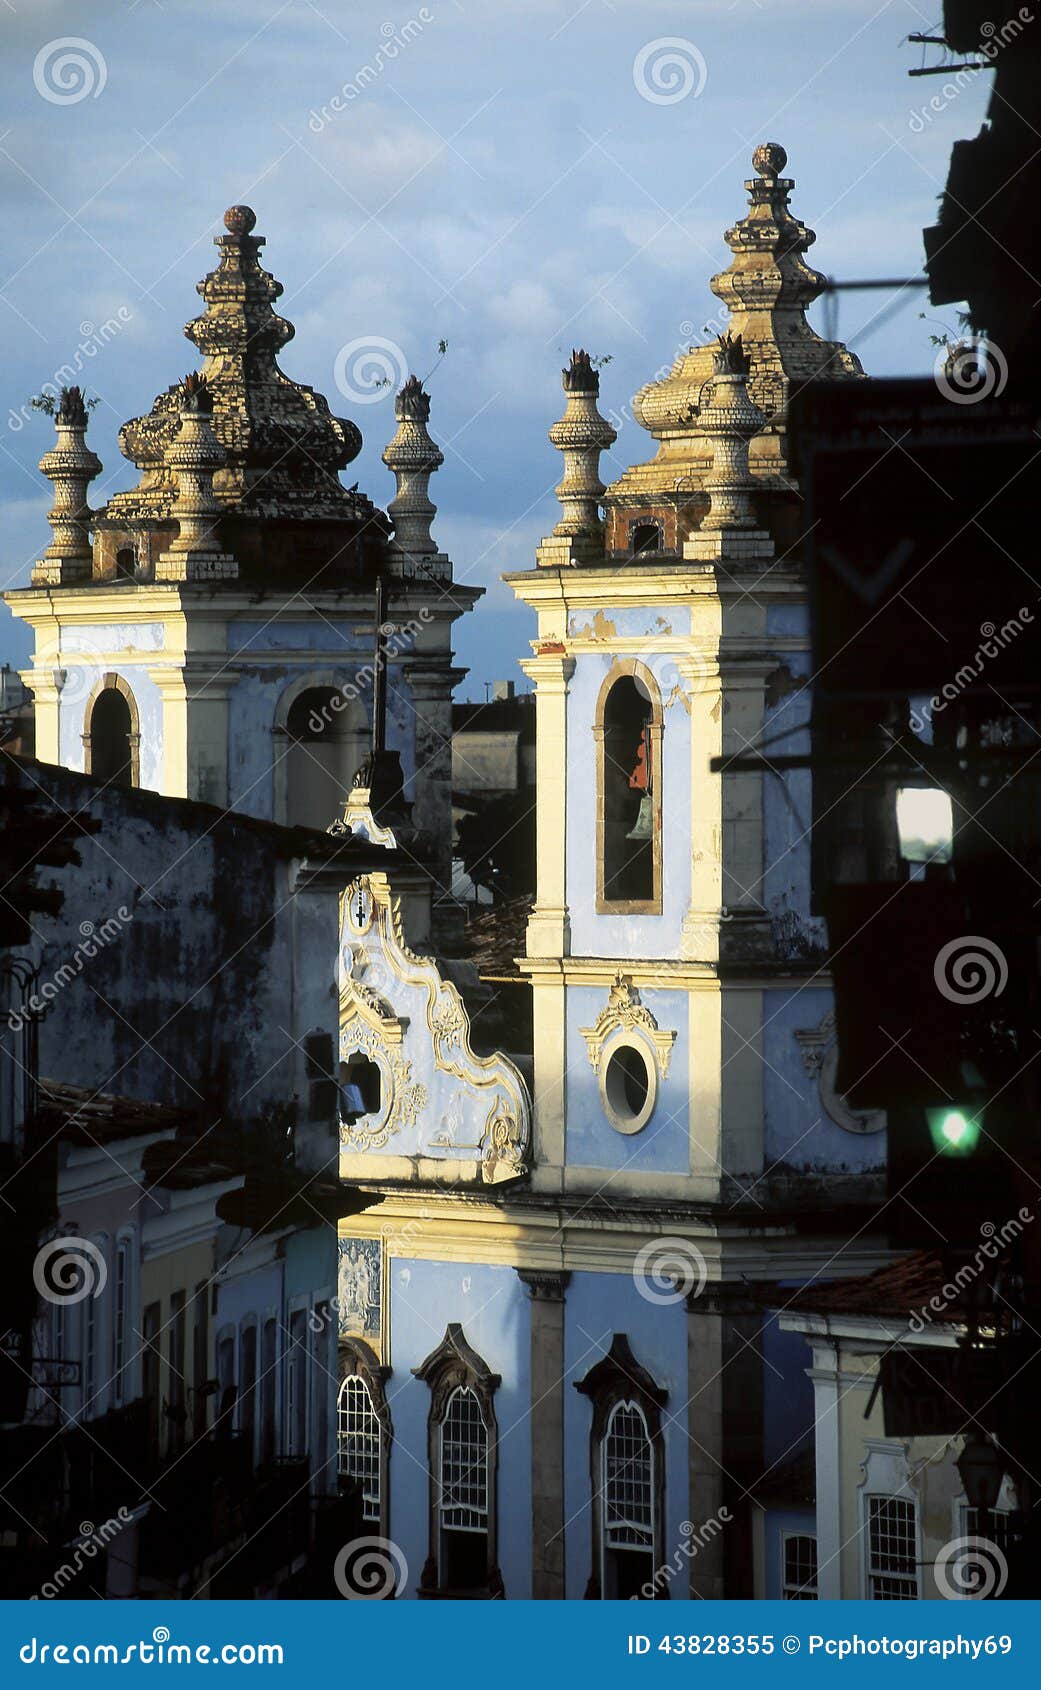 church of nossa senhora dos pretos, salvador, brazil.